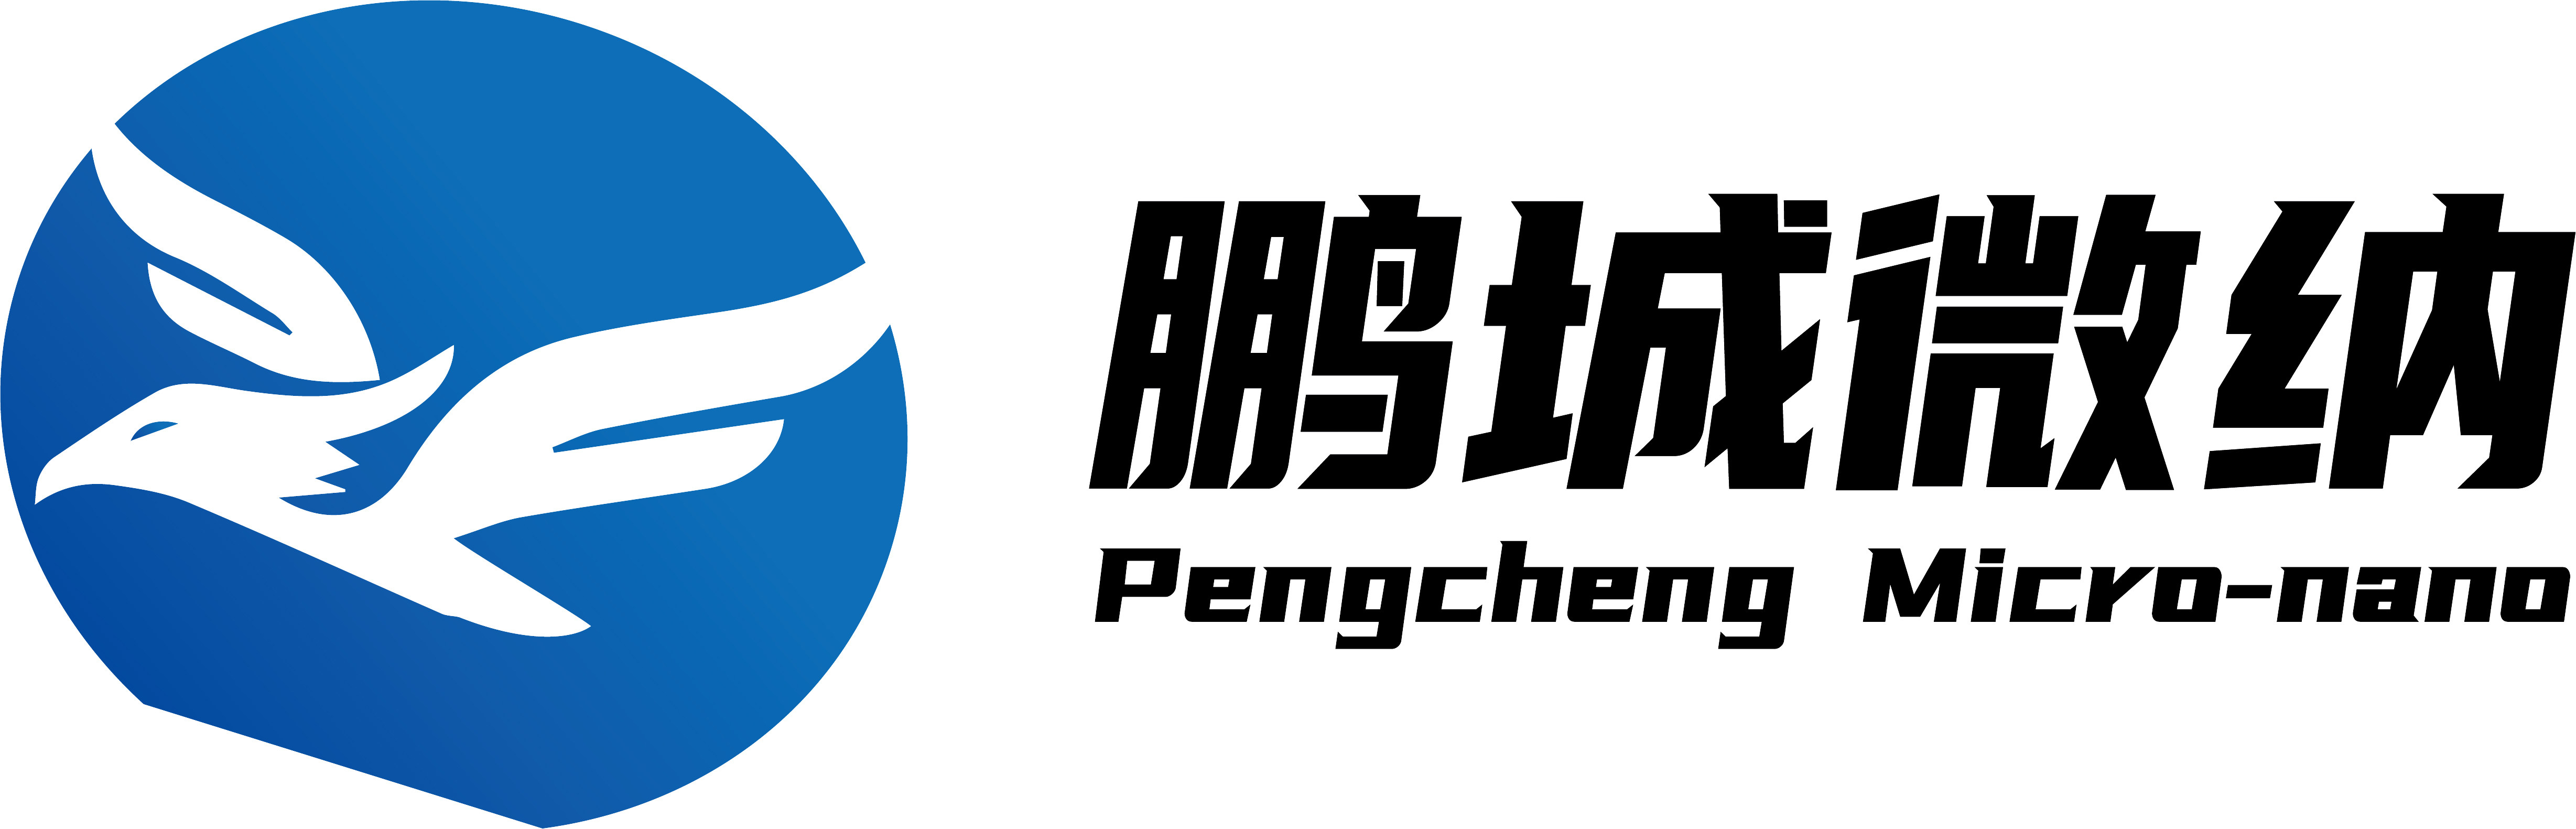 Pengcheng Micro Nano Technology (Shenyang) Co., LTD.